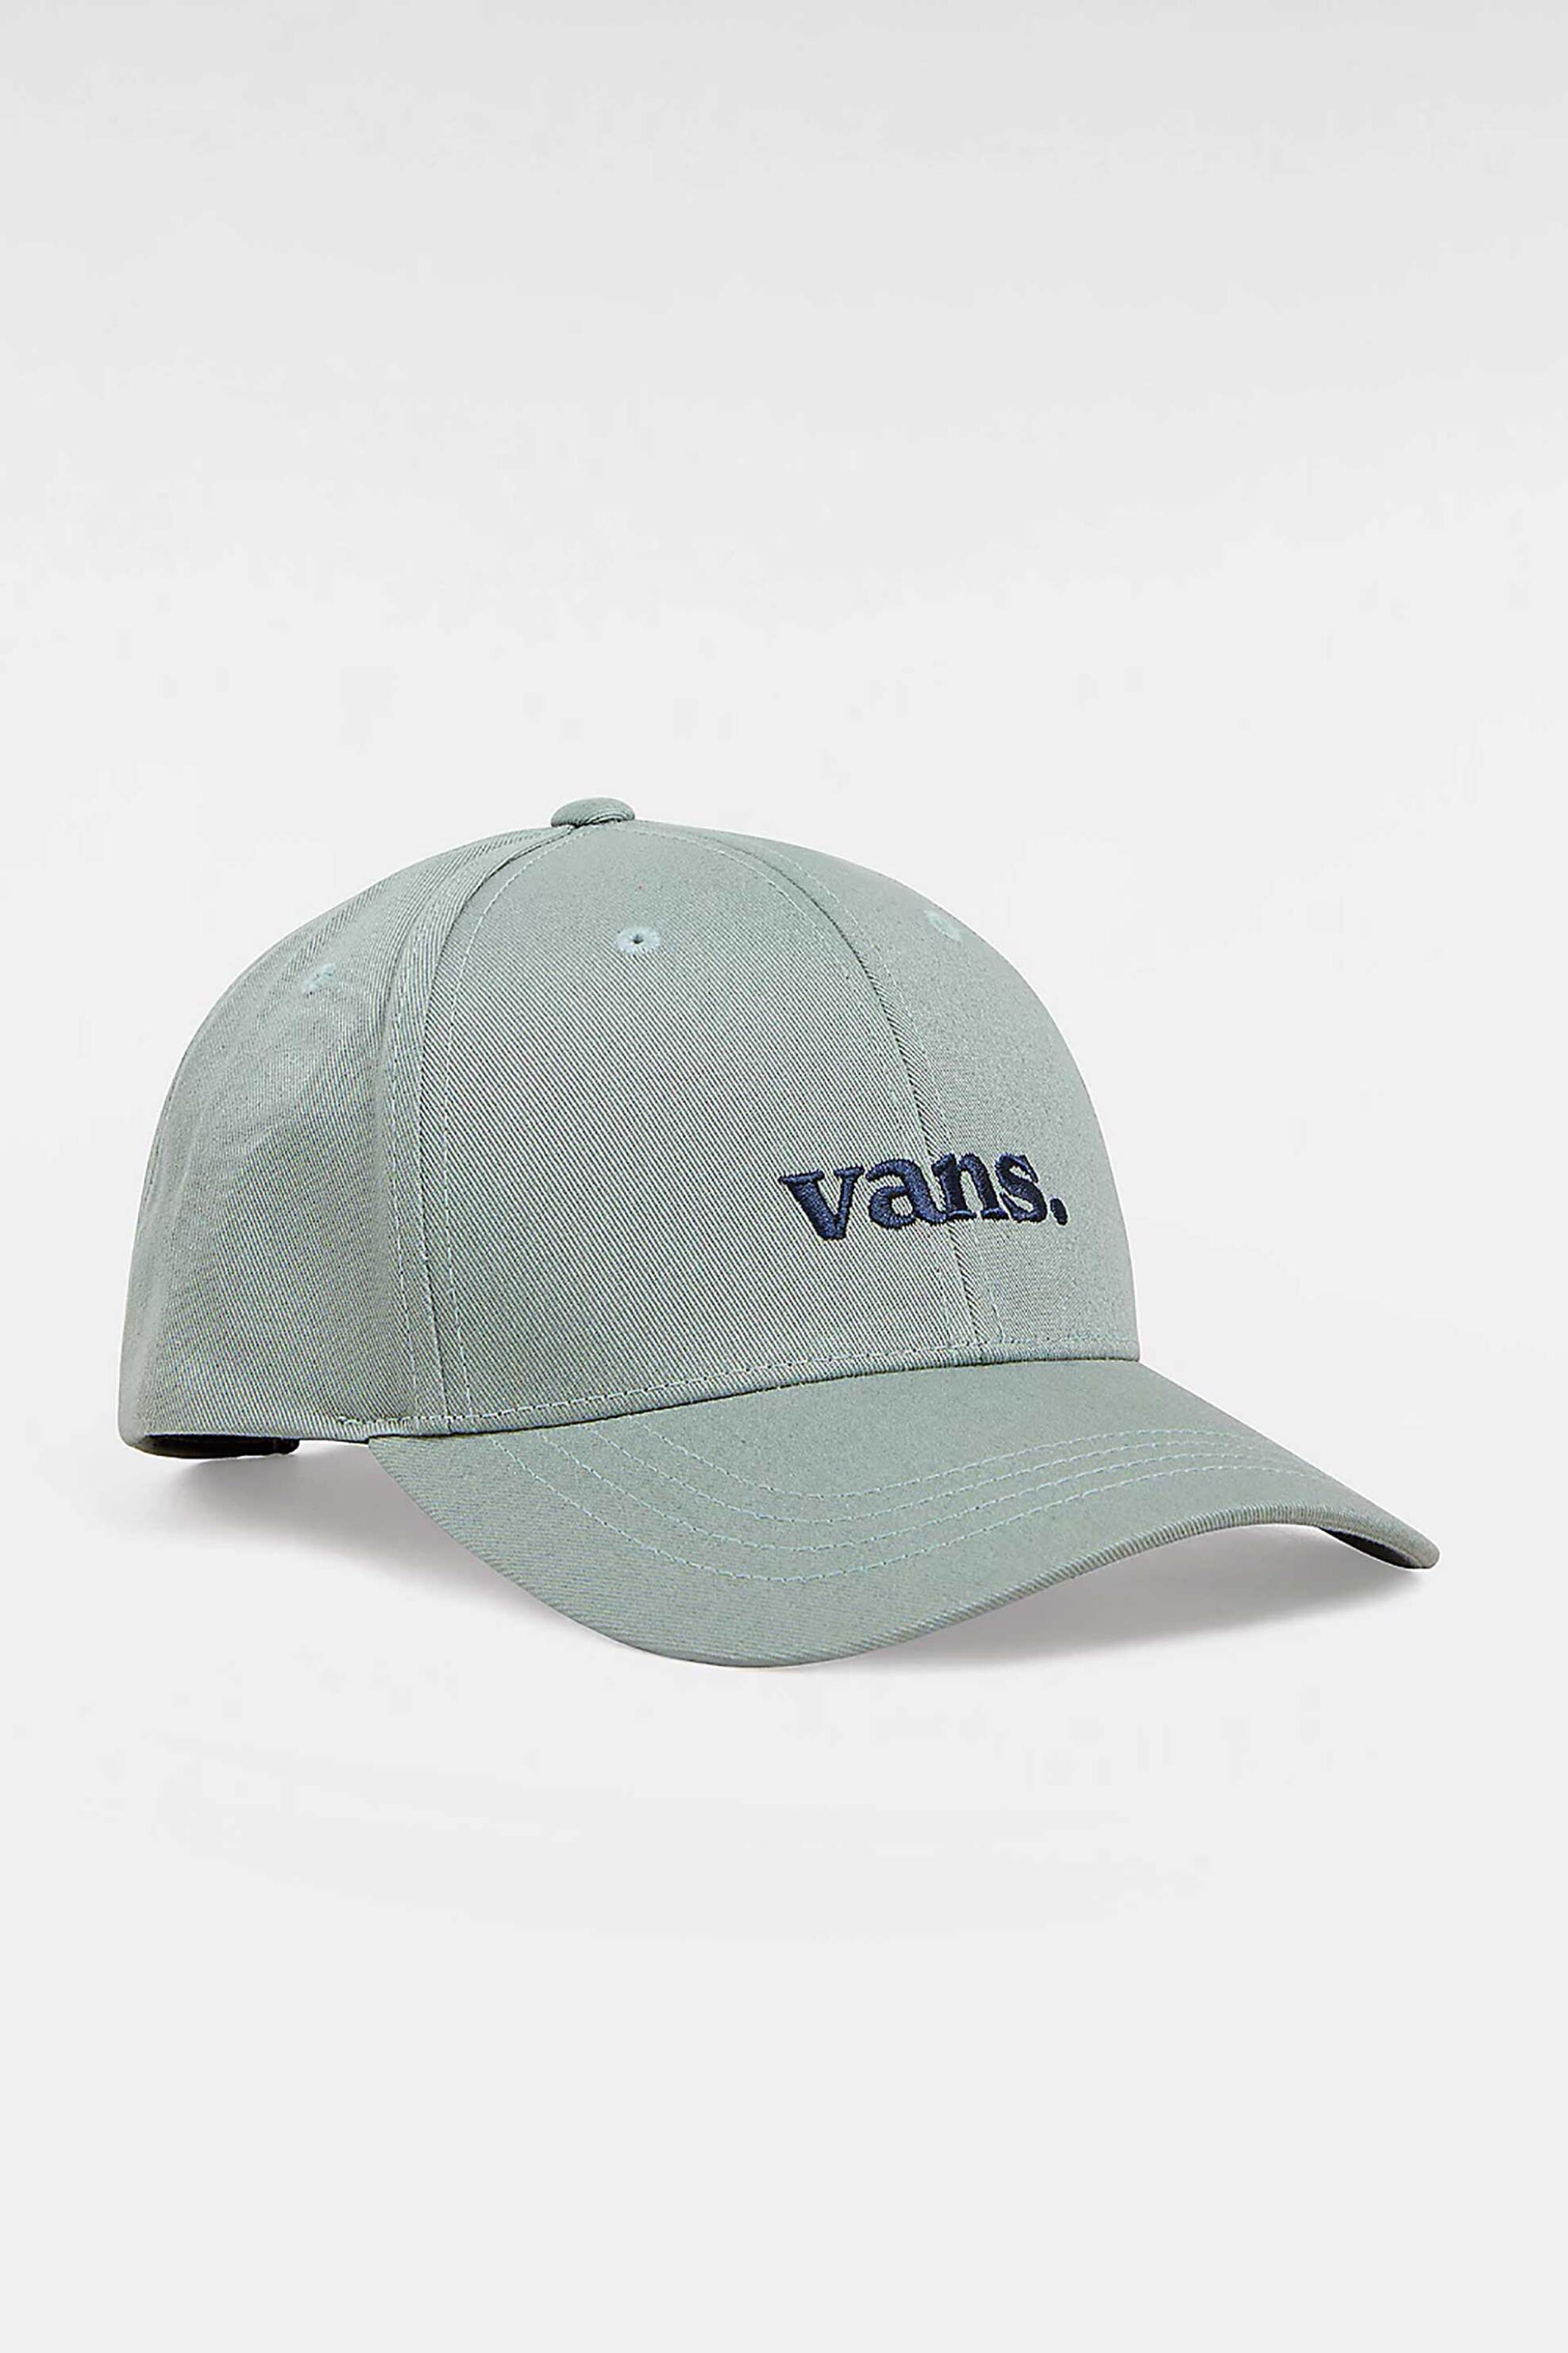 Ανδρική Μόδα > Ανδρικά Αξεσουάρ > Ανδρικά Καπέλα & Σκούφοι Vans ανδρικό καπέλο jockey βαμβακερό με contrast κεντημένο λογότυπο "66 Structured" - VN0008P6CJL1 Πράσινο Μέντας